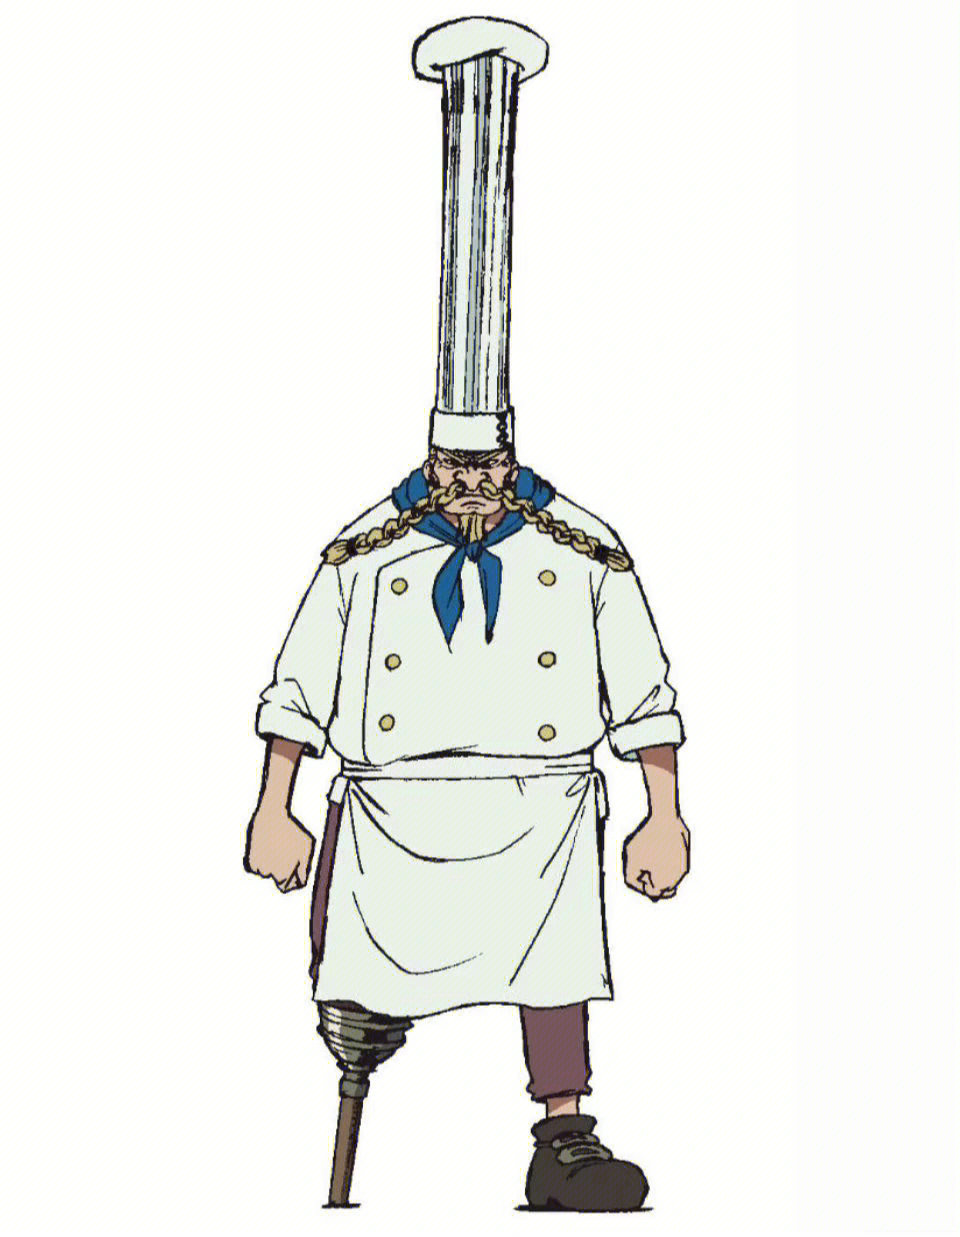 红脚哲普(也译为哲夫),登场于东海篇,是海上餐厅巴拉蒂的主人